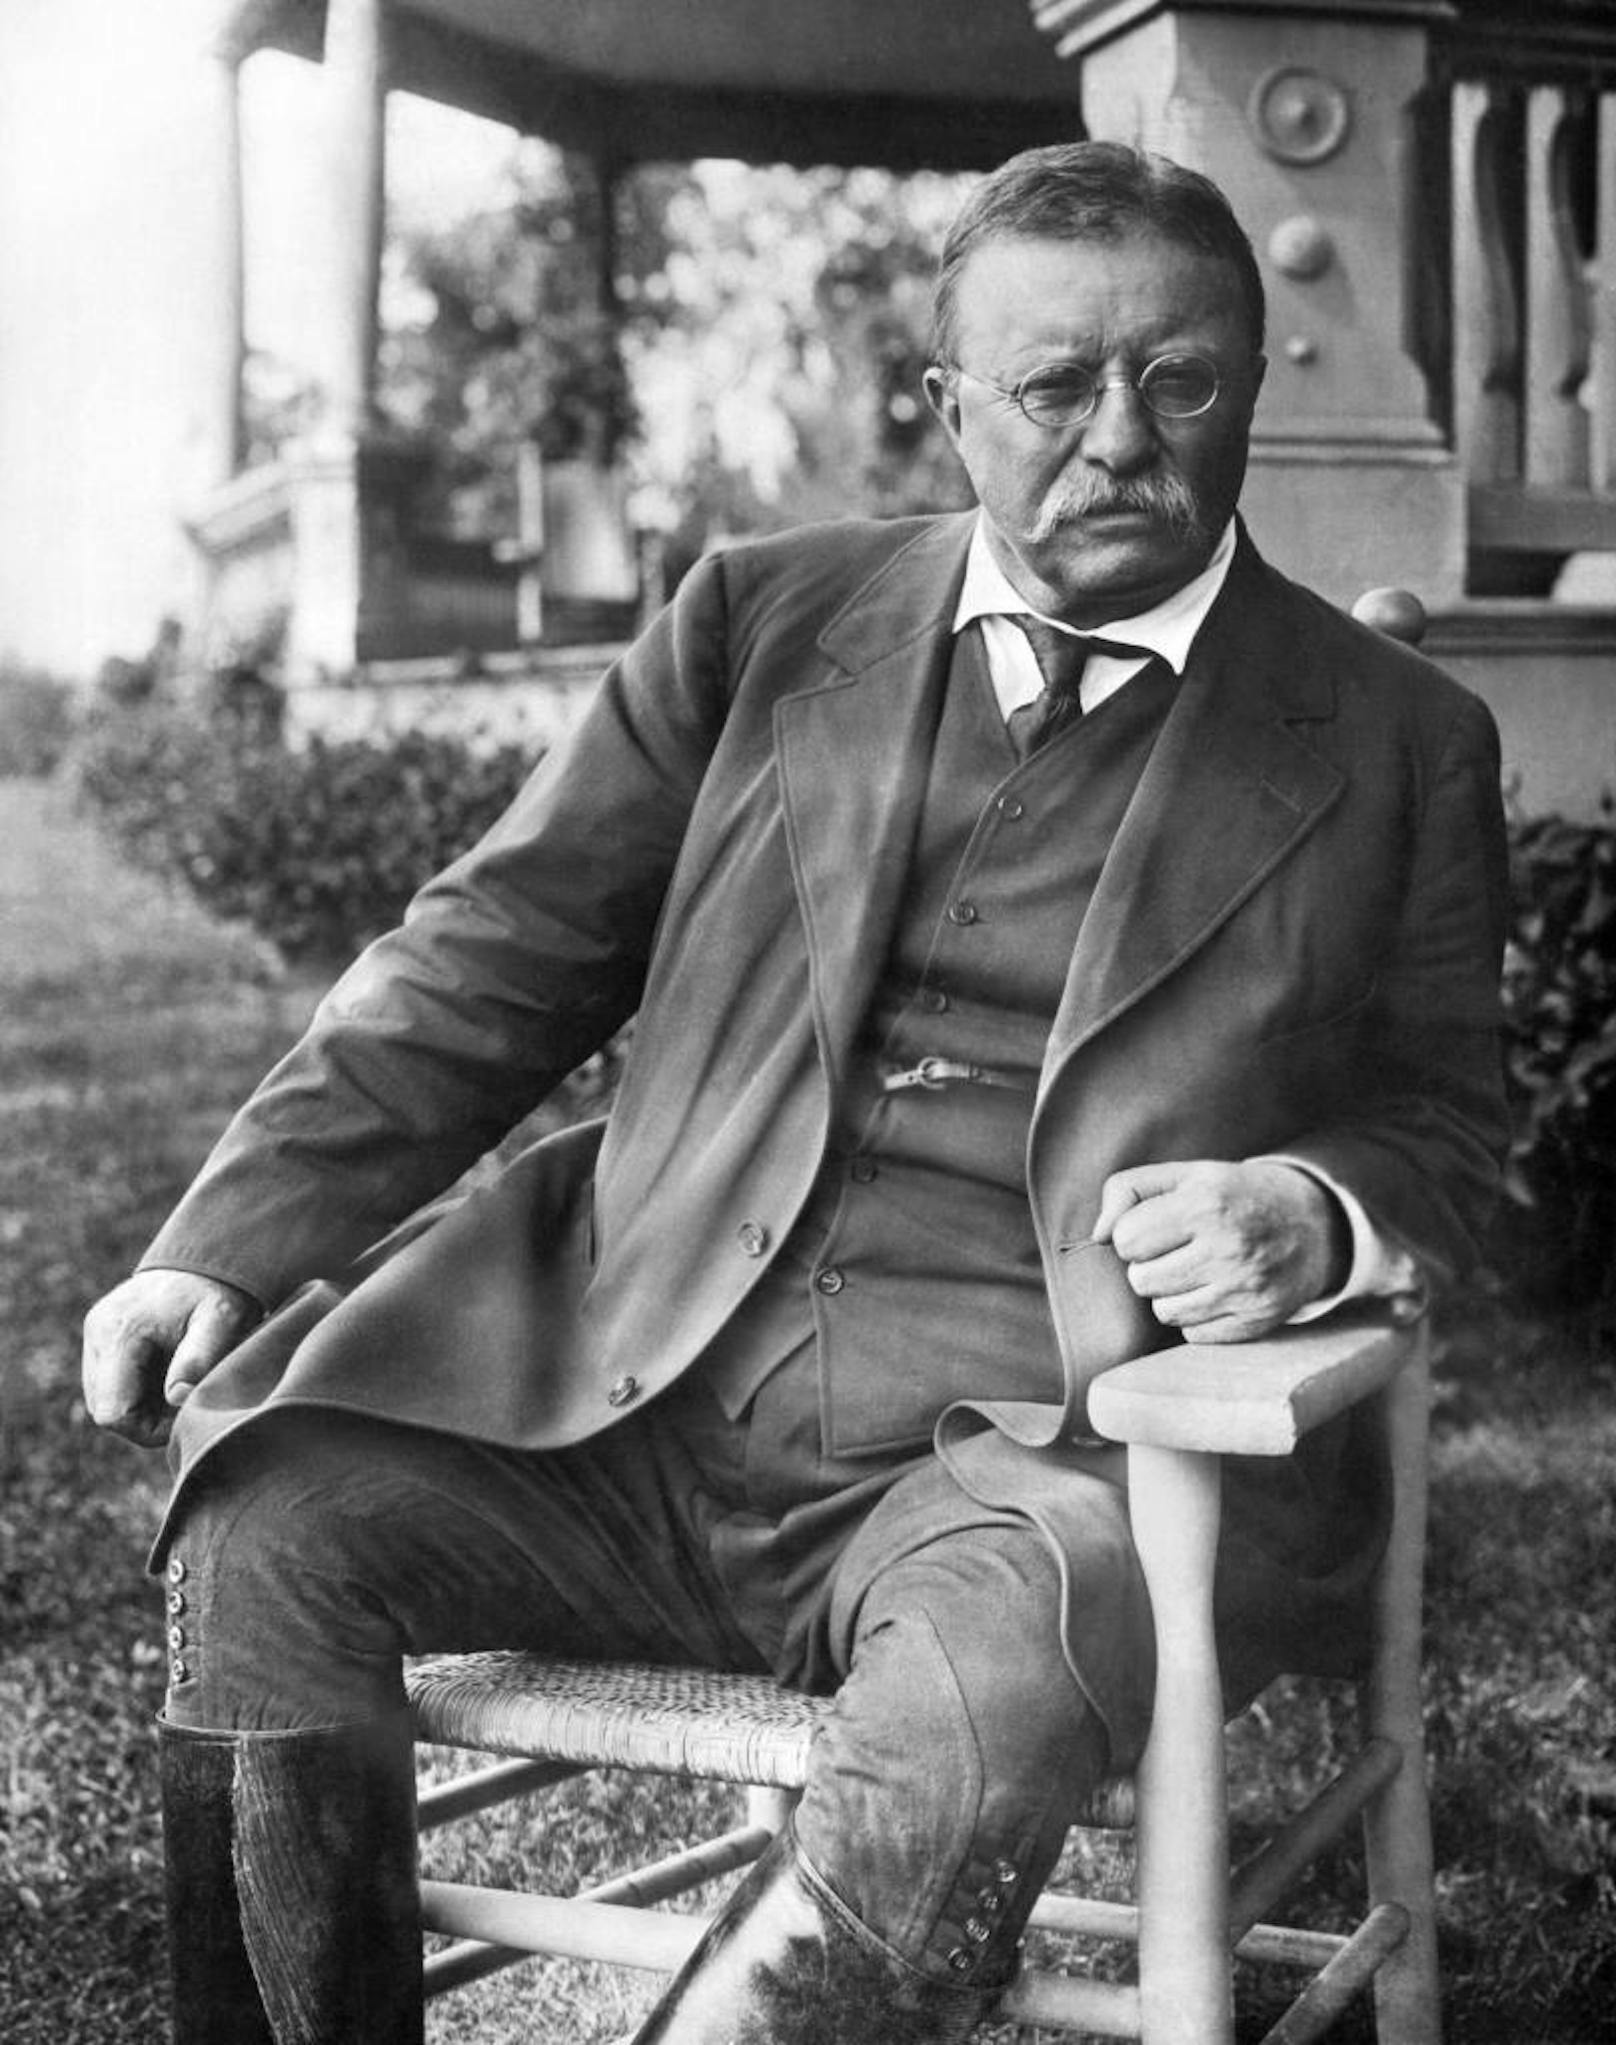 Theodore Roosevelt war 42 als er (Vize)Präsident wurde